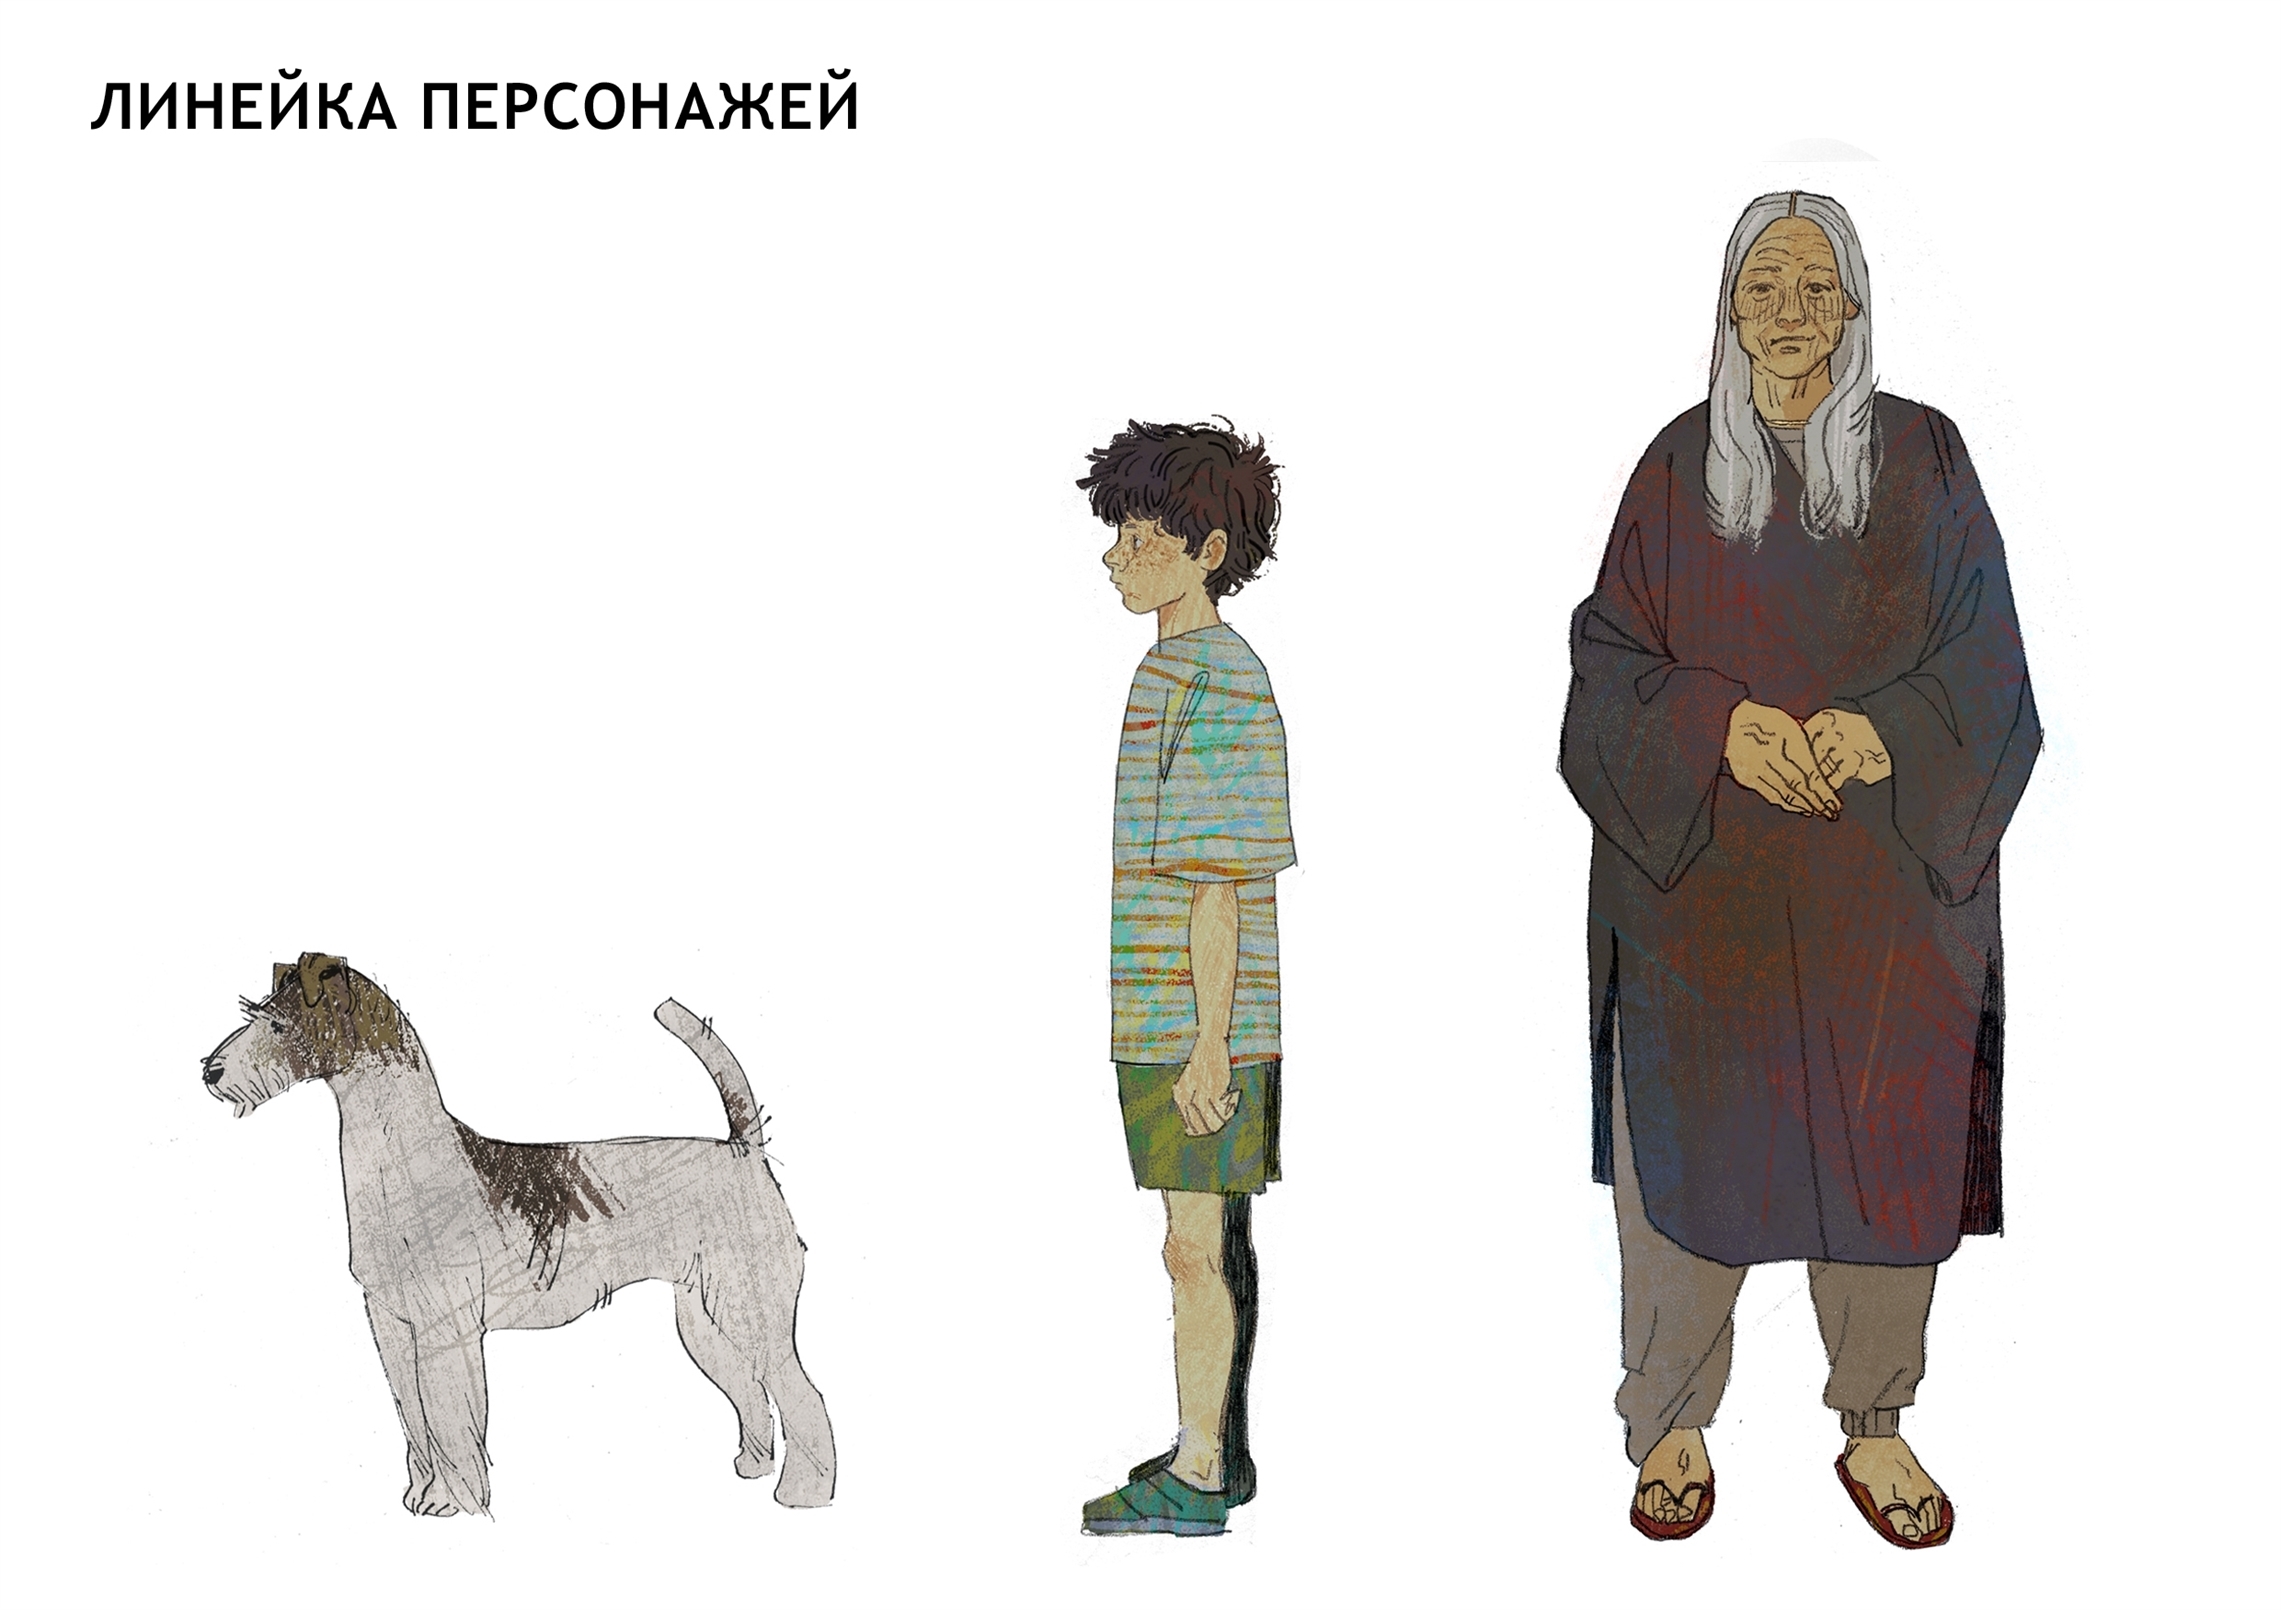 Анастасия Селезнёва. Собачка, которой у Нино не было, линейка персонажей.jpg